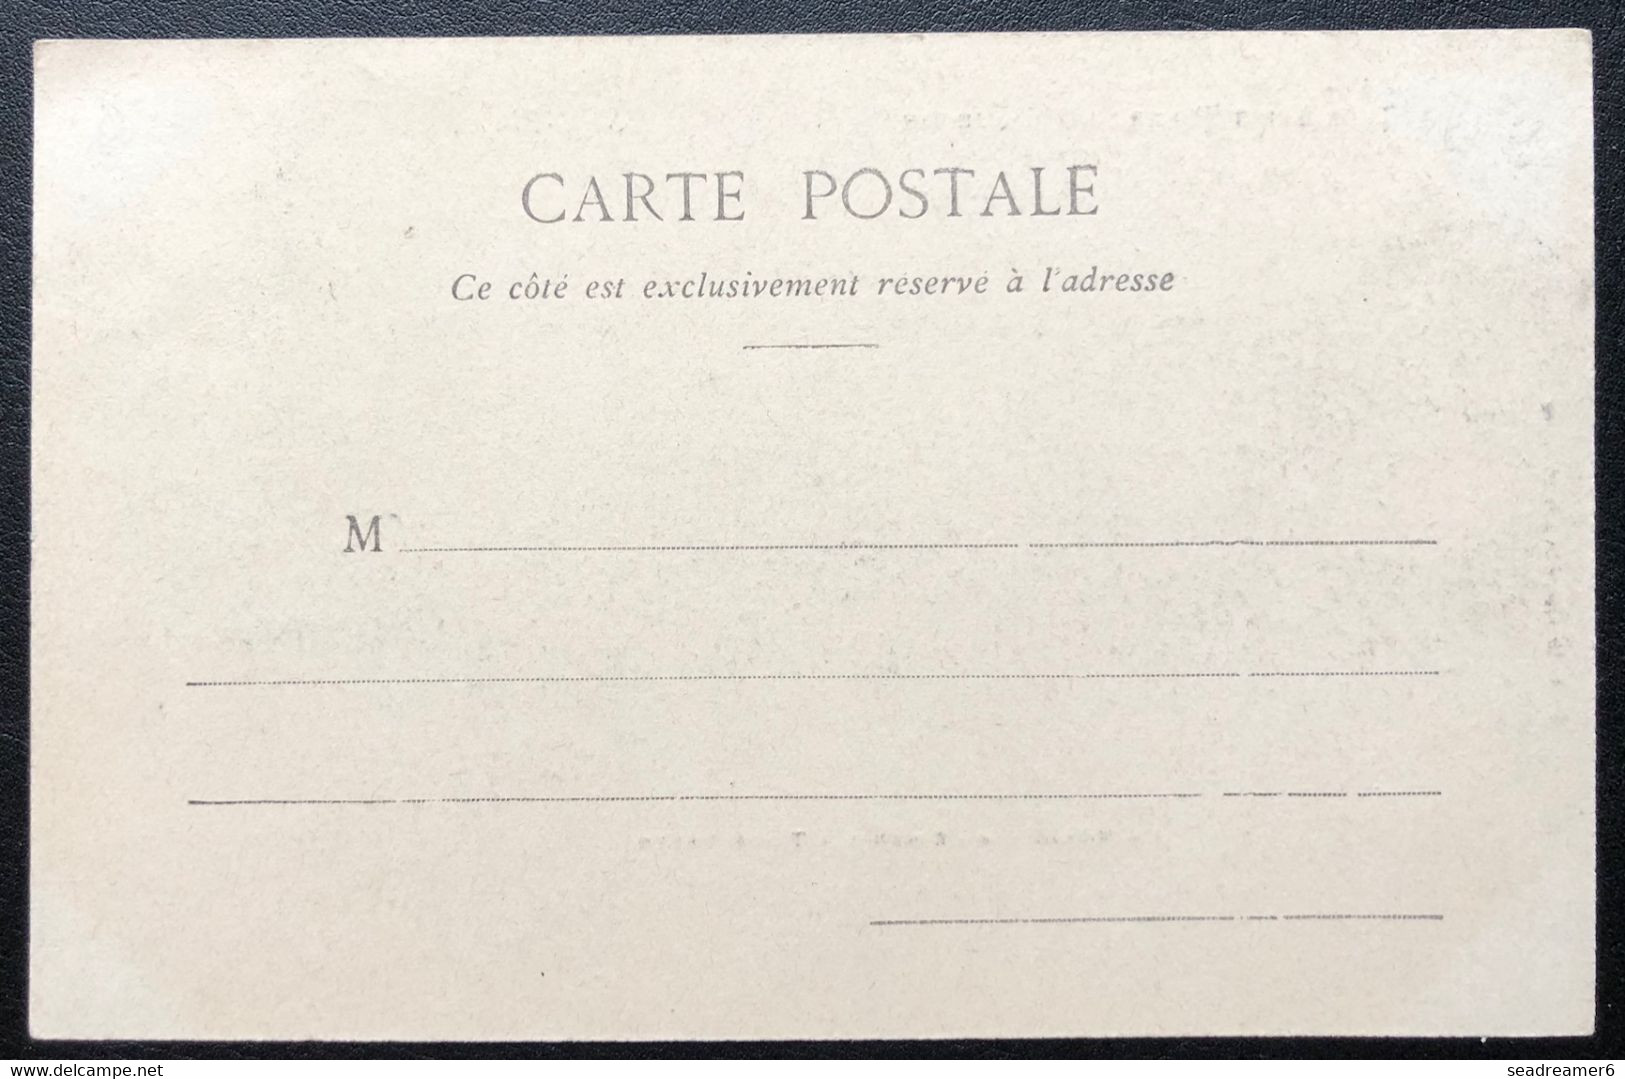 Carte Postale Originale De Saint-Pierre Et Miquelon 1900/1920 "un Village De Pecheurs à Terre Neuve (timbre Manquant) - Saint-Pierre-et-Miquelon